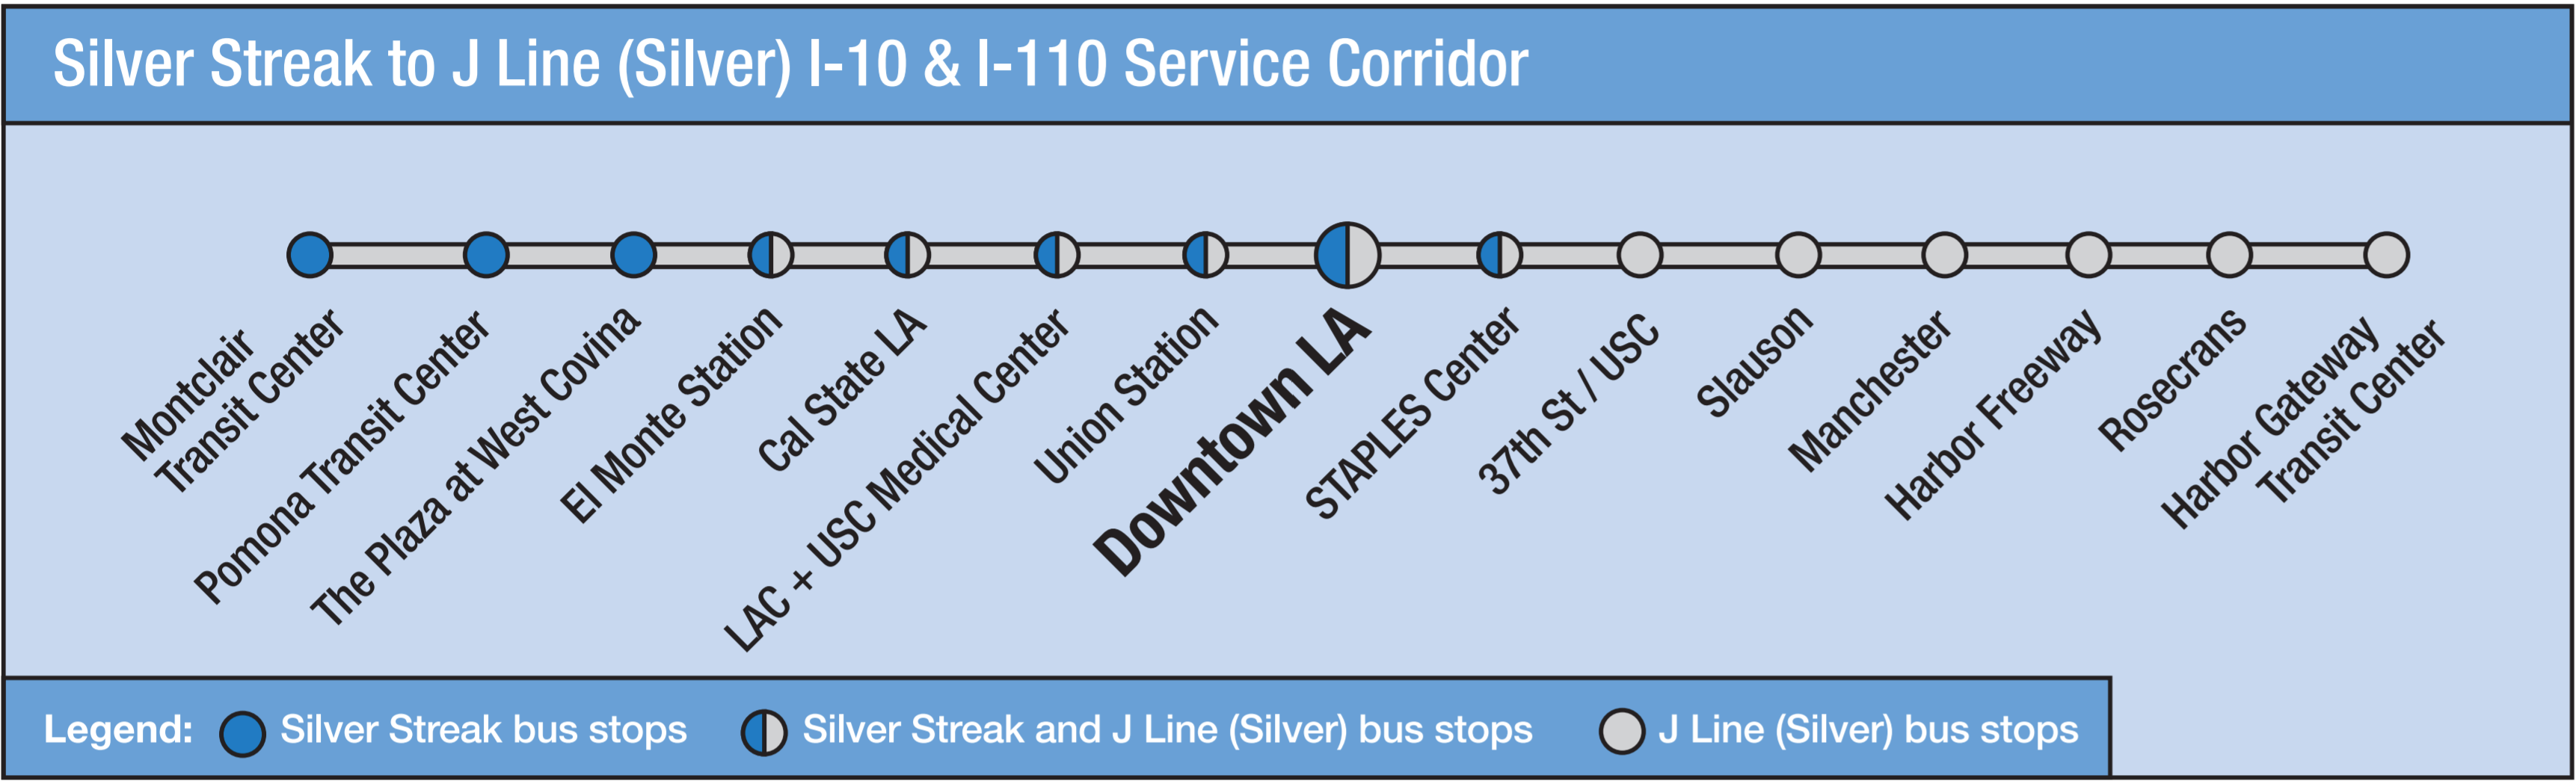 แผนที่ Silver Streak ถึง J Line